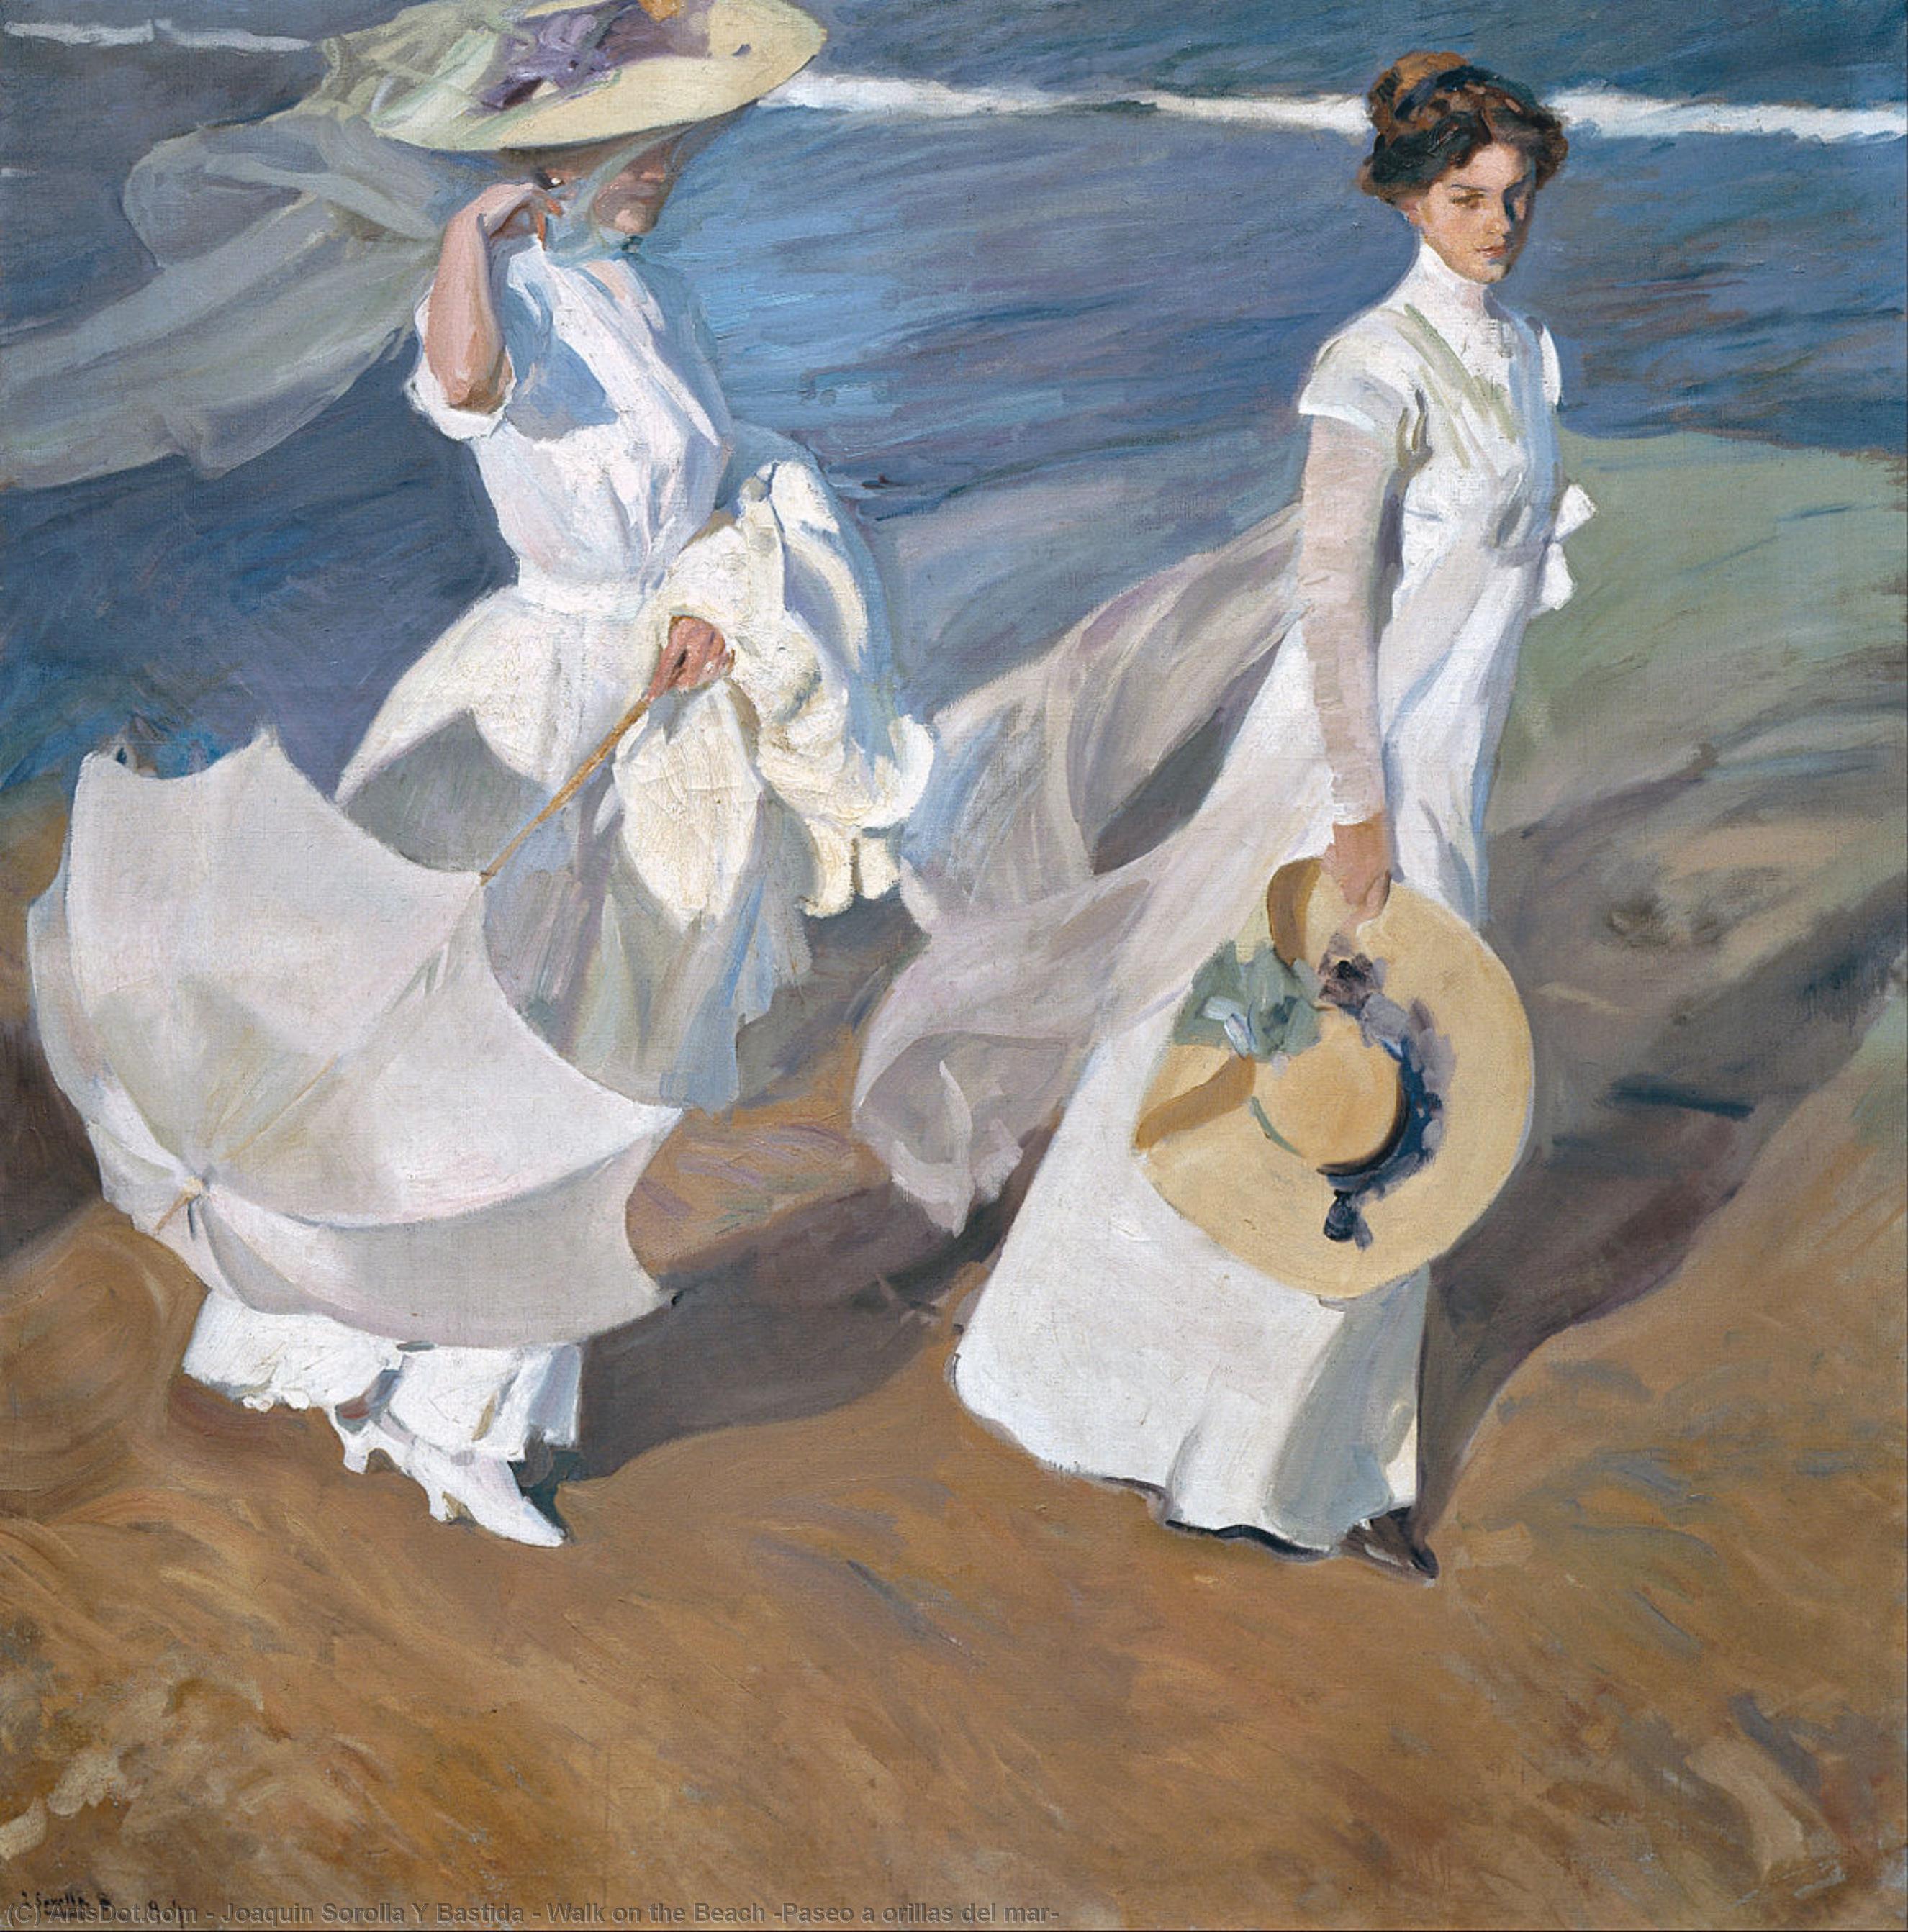 Wikioo.org - Bách khoa toàn thư về mỹ thuật - Vẽ tranh, Tác phẩm nghệ thuật Joaquin Sorolla Y Bastida - Walk on the Beach (Paseo a orillas del mar)